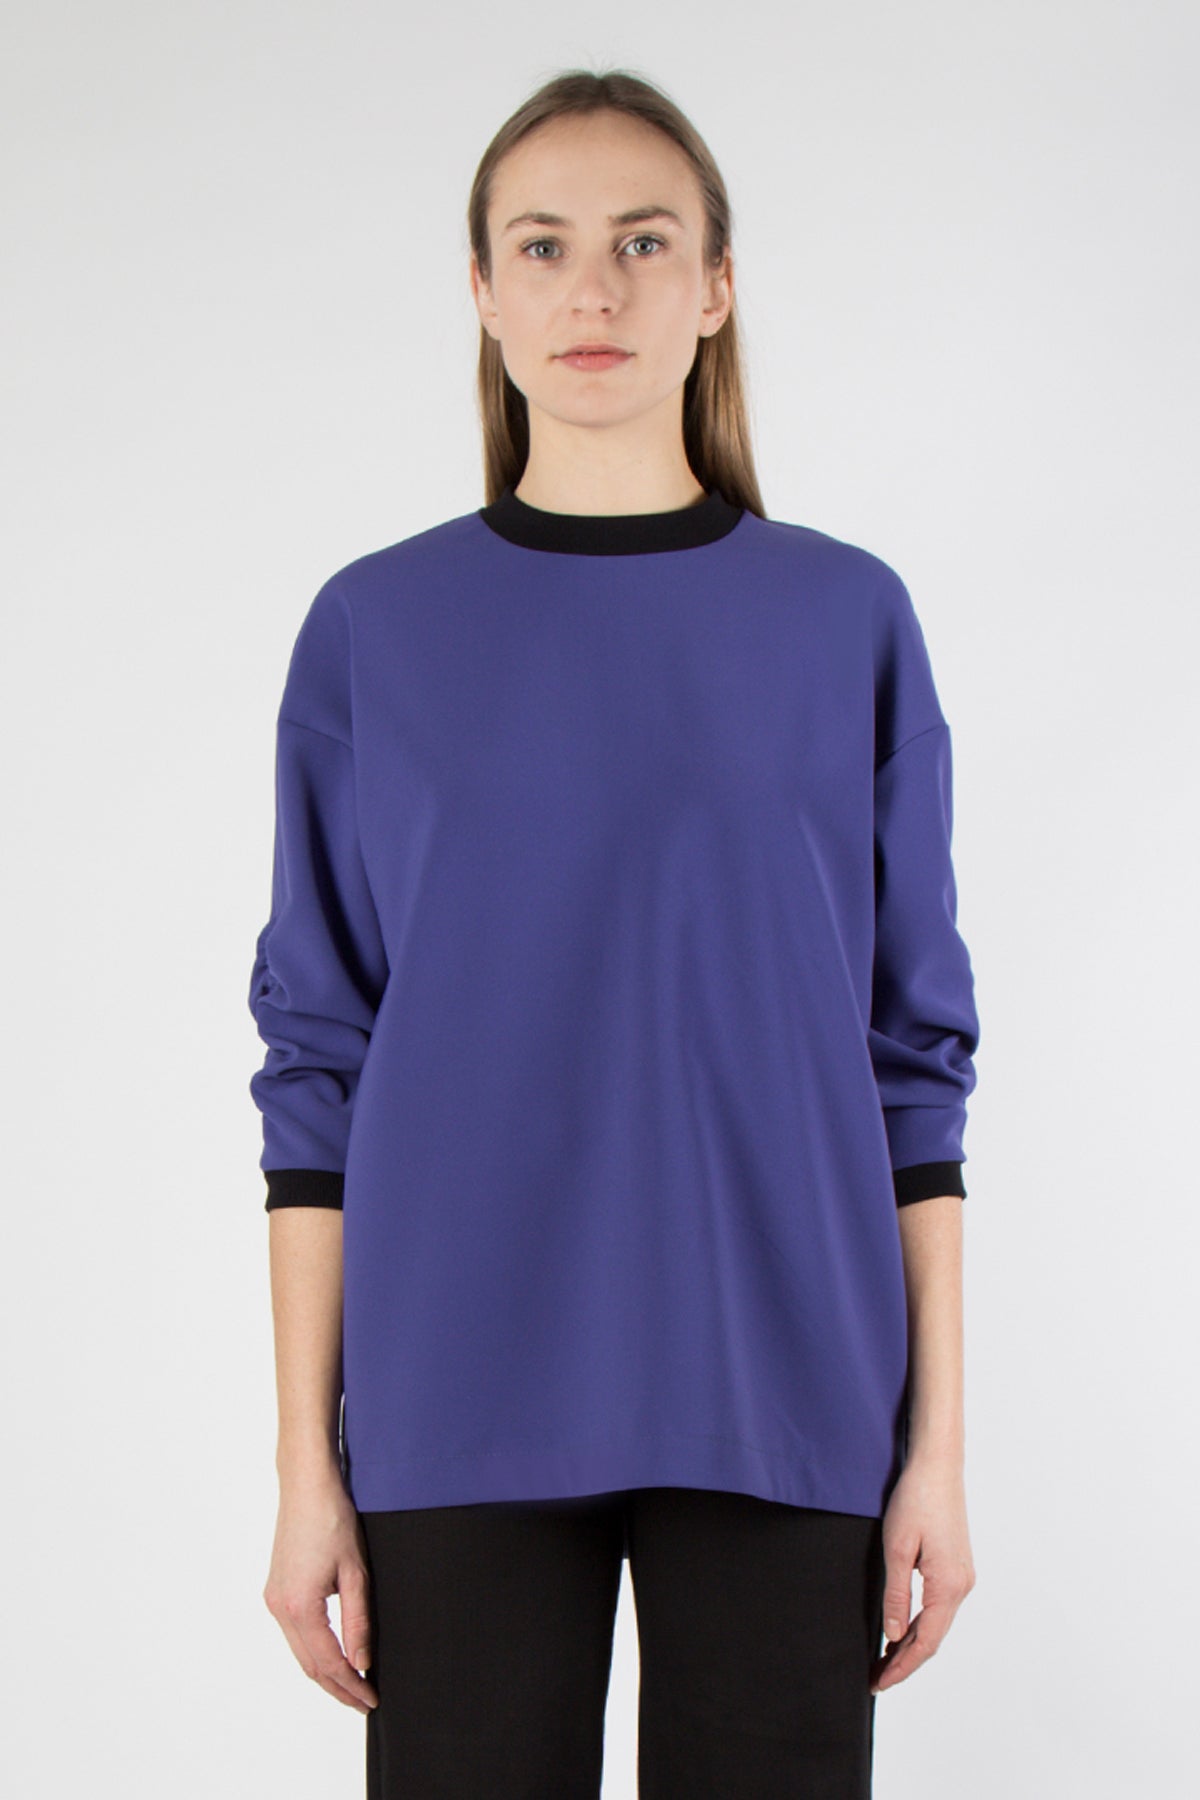 Lilja Shirt - purple